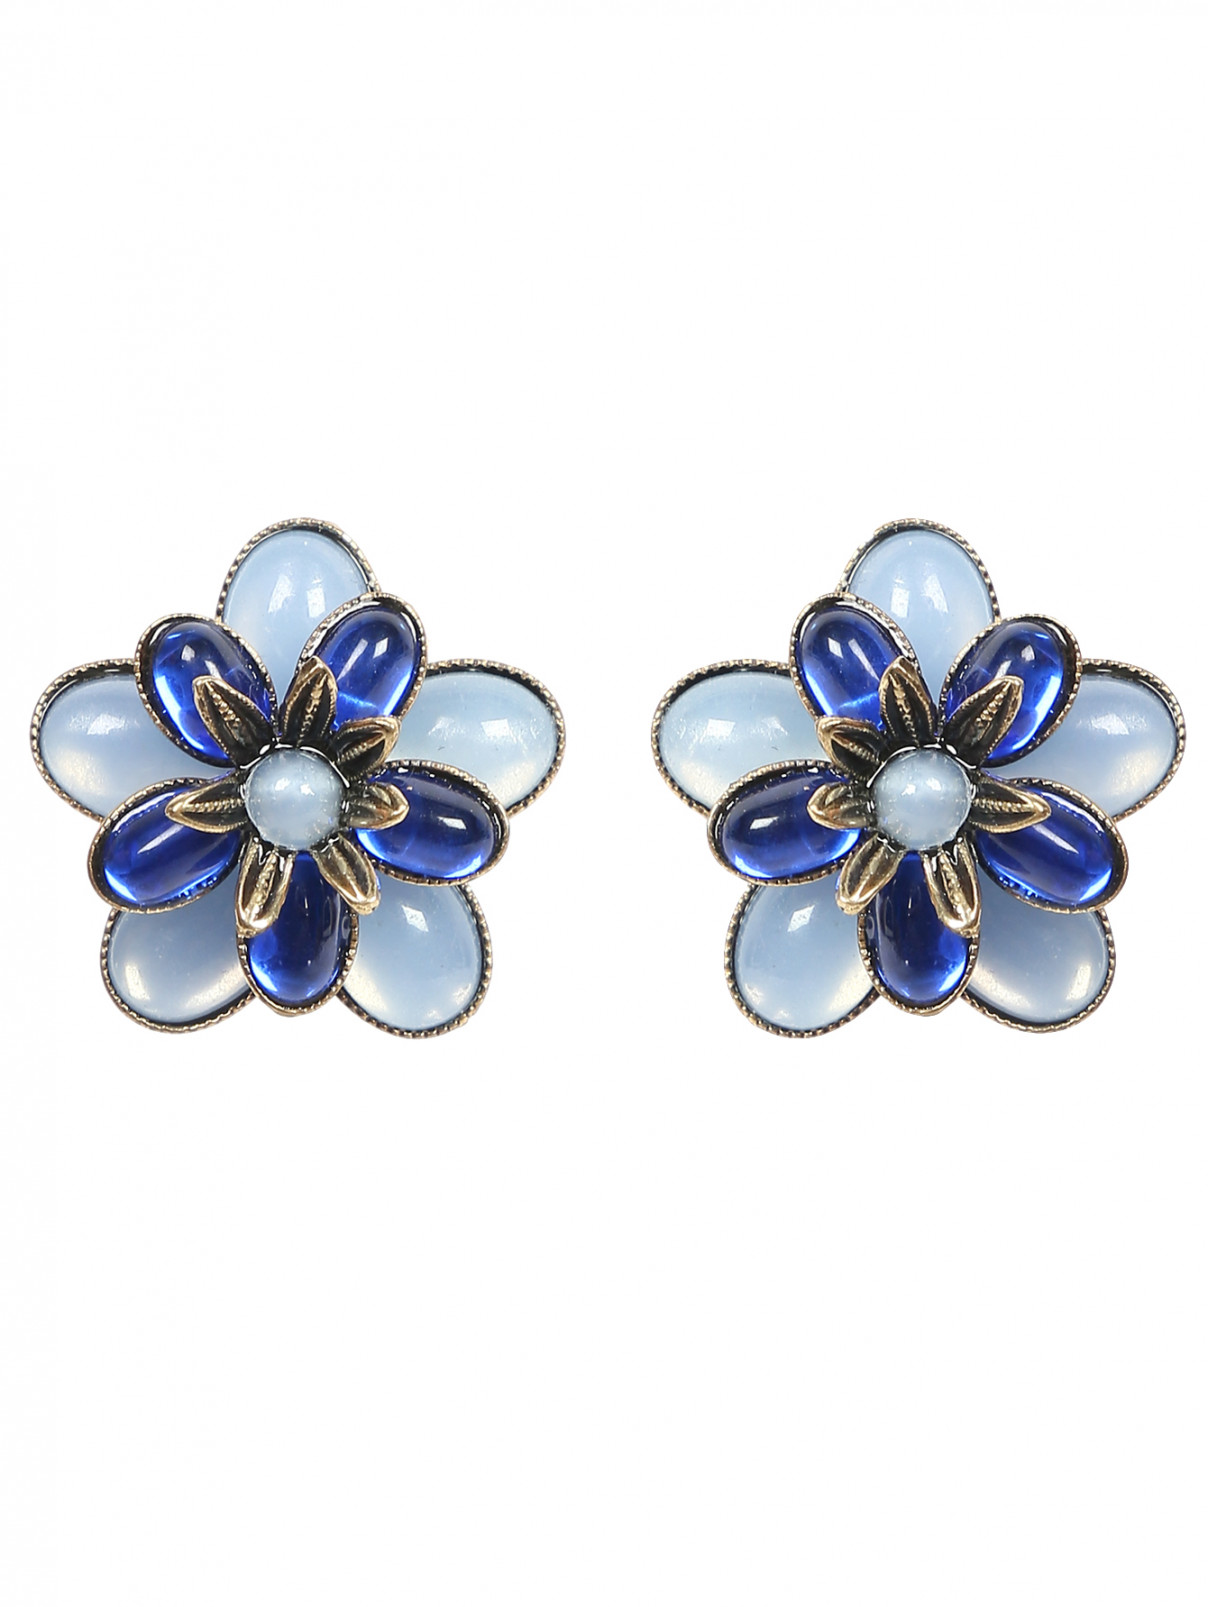 Серьги из металла с декоративными камнями в форме цветов Look&Took  –  Общий вид  – Цвет:  Синий